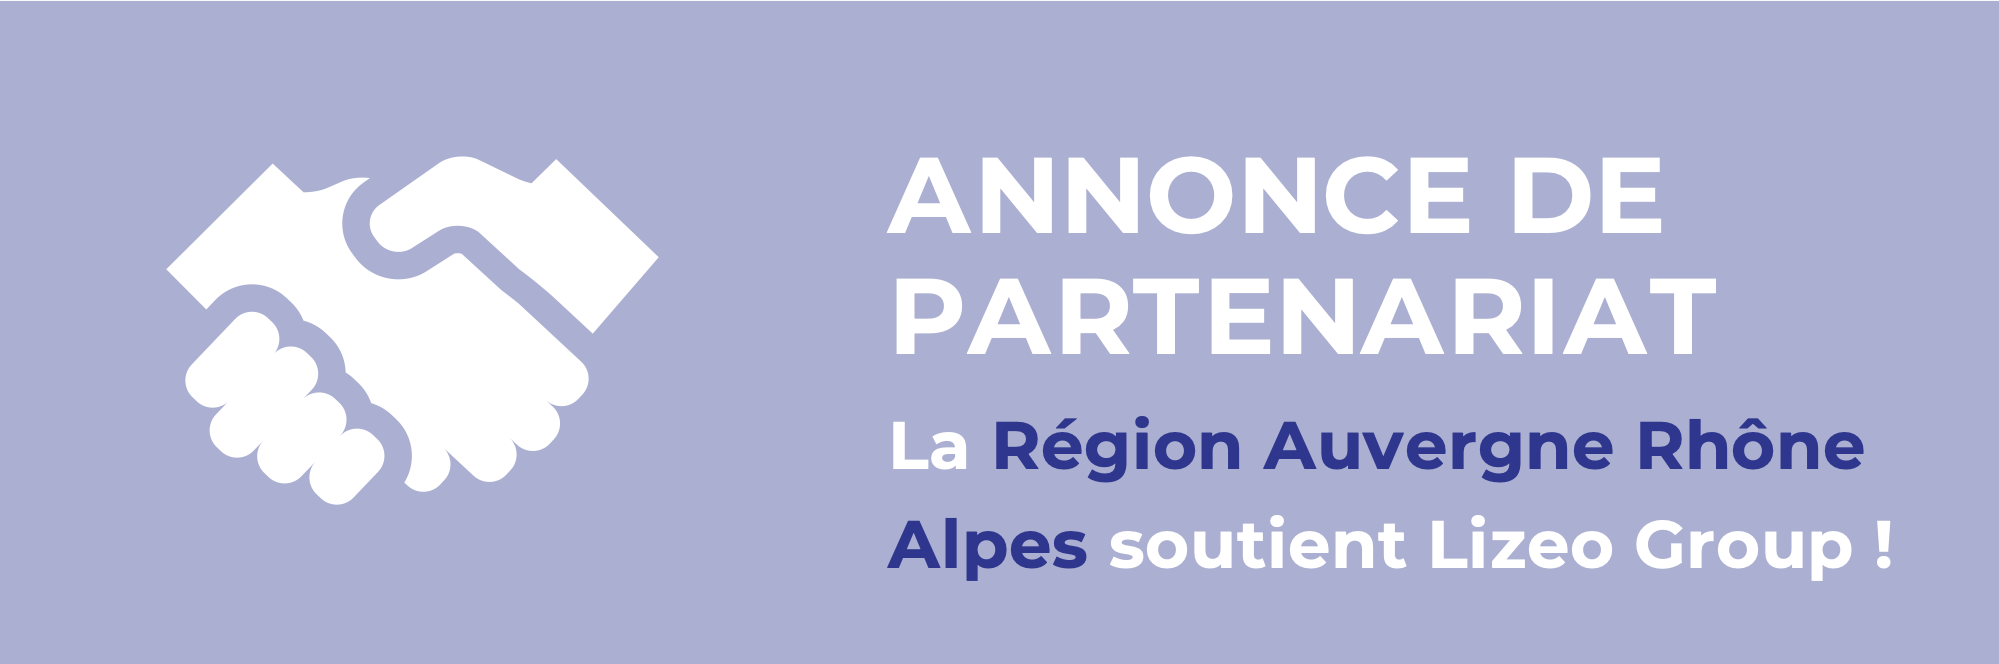 Partenariat entre la Région Auvergne-Rhône-Alpes et Lizeo Group